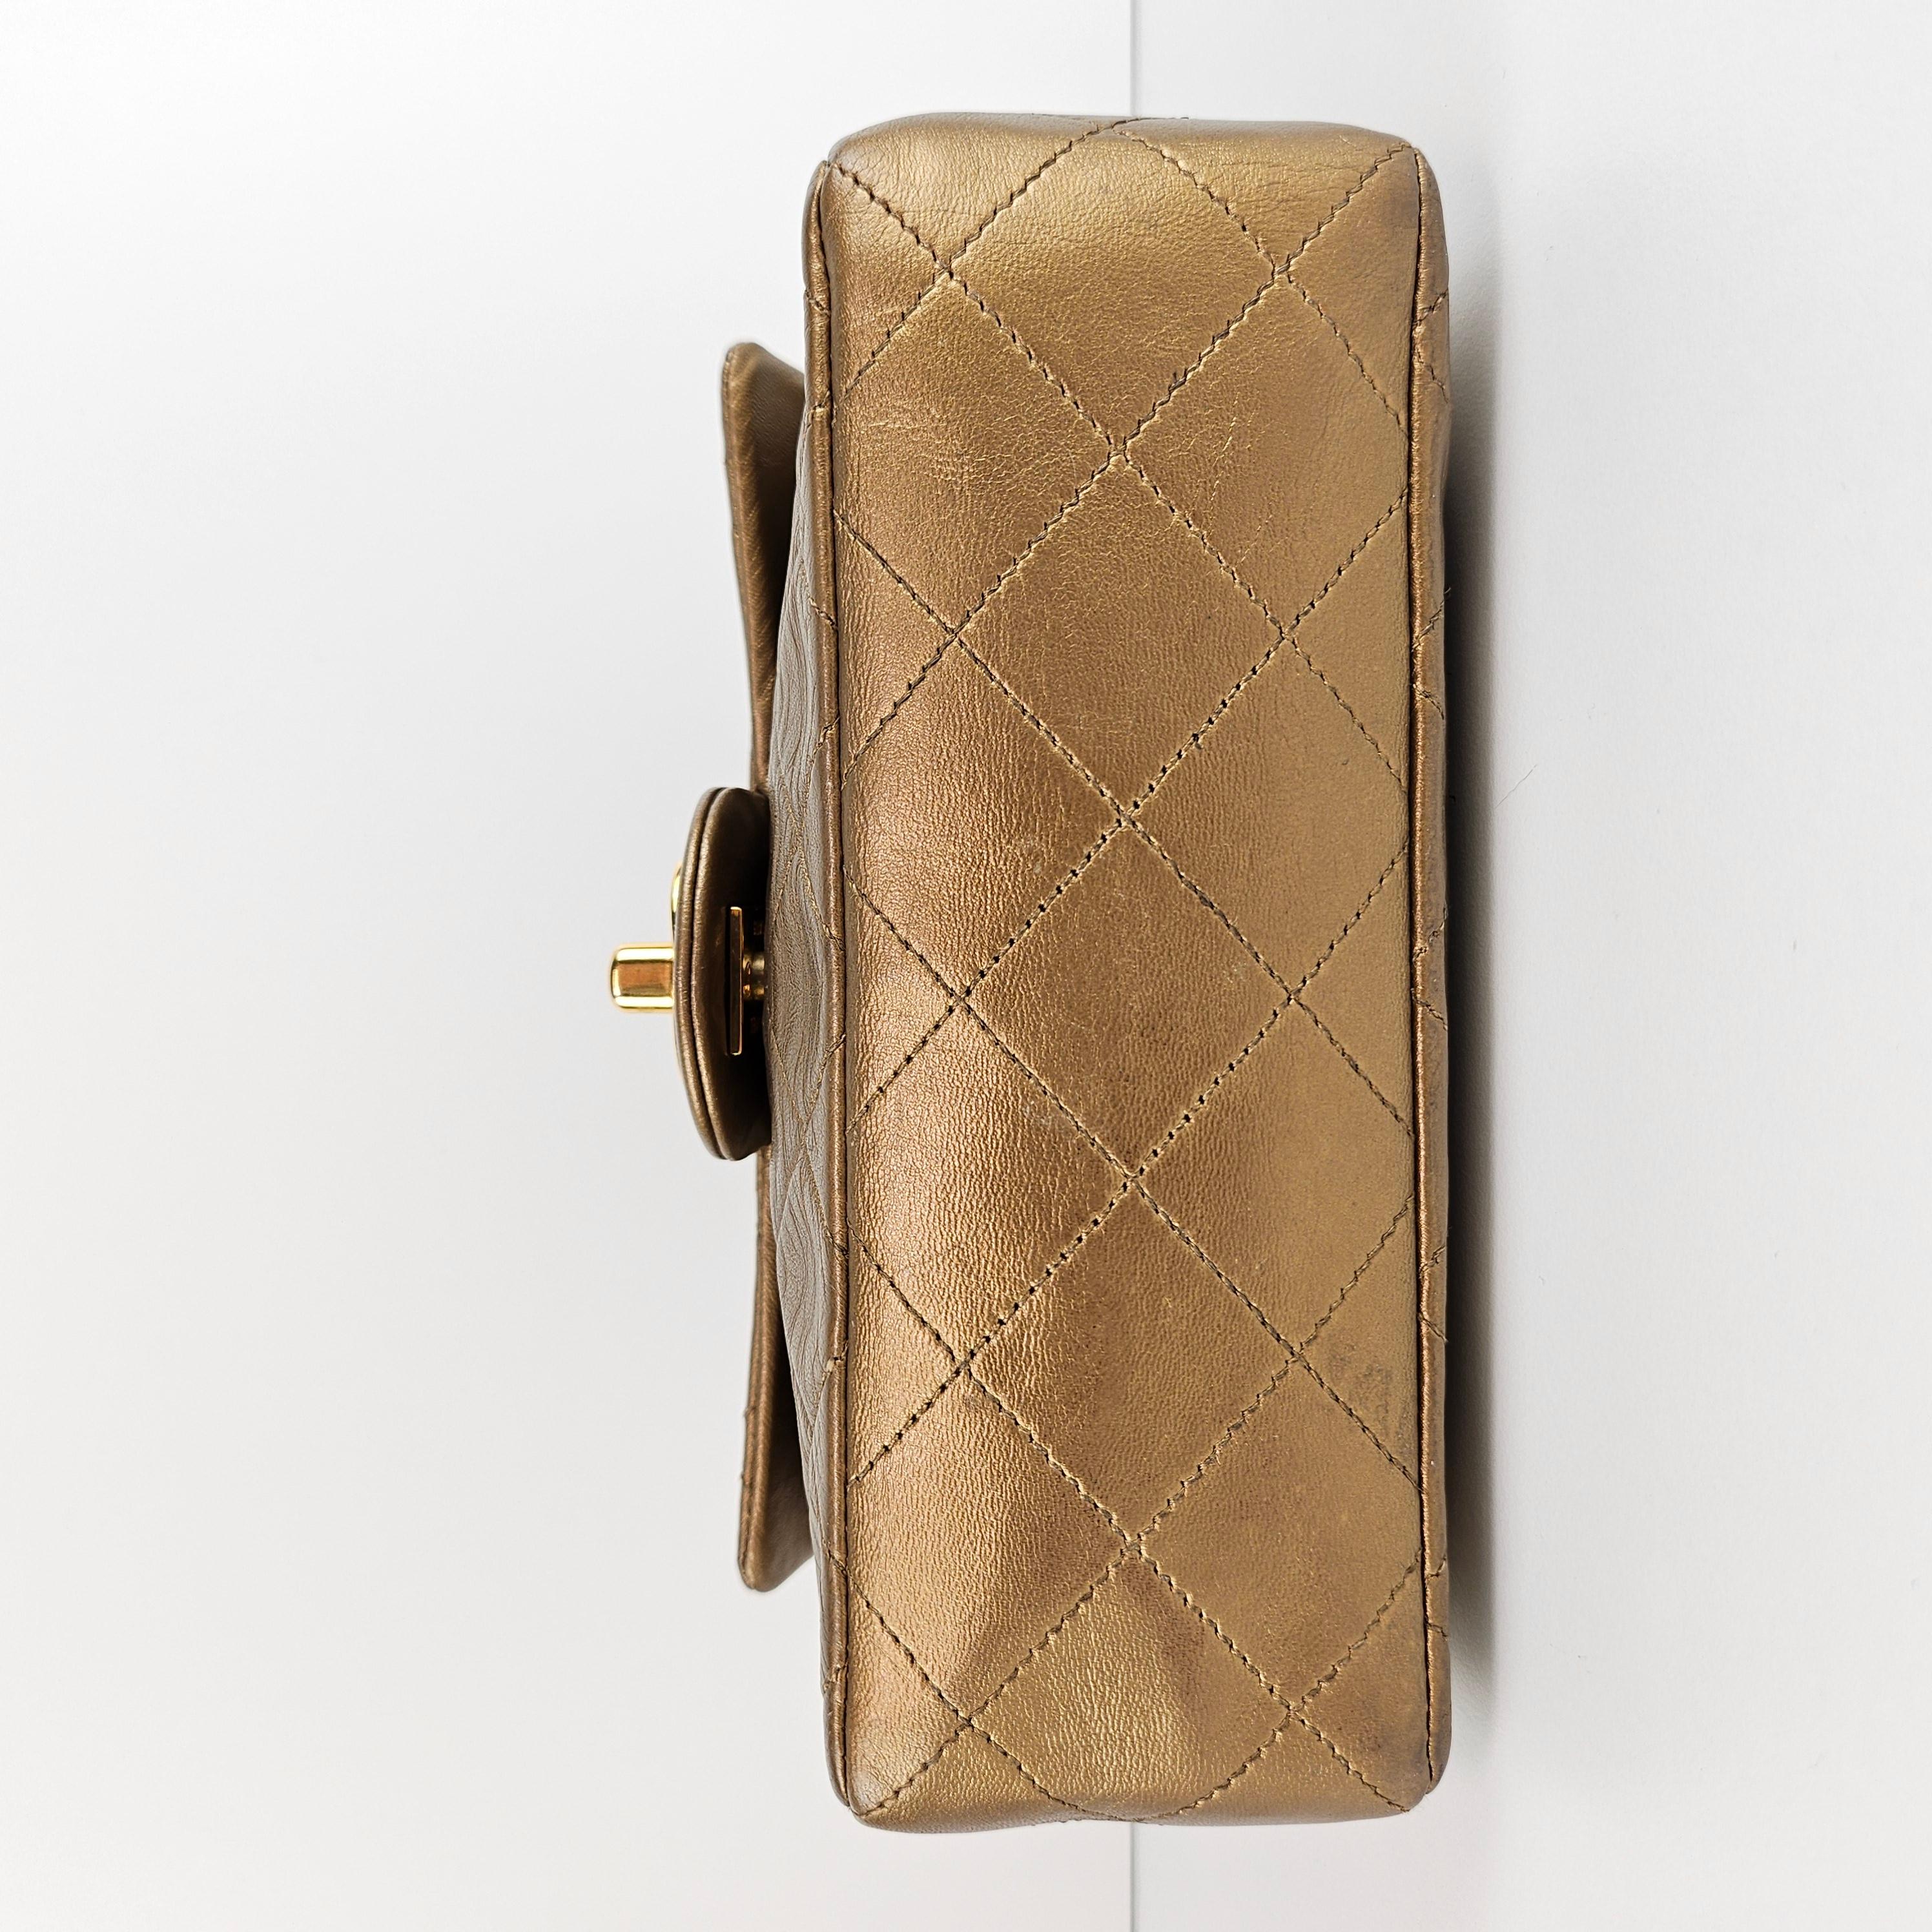 Chanel - Mini sac à rabat Bijoux en cuir doré métallisé matelassé 9